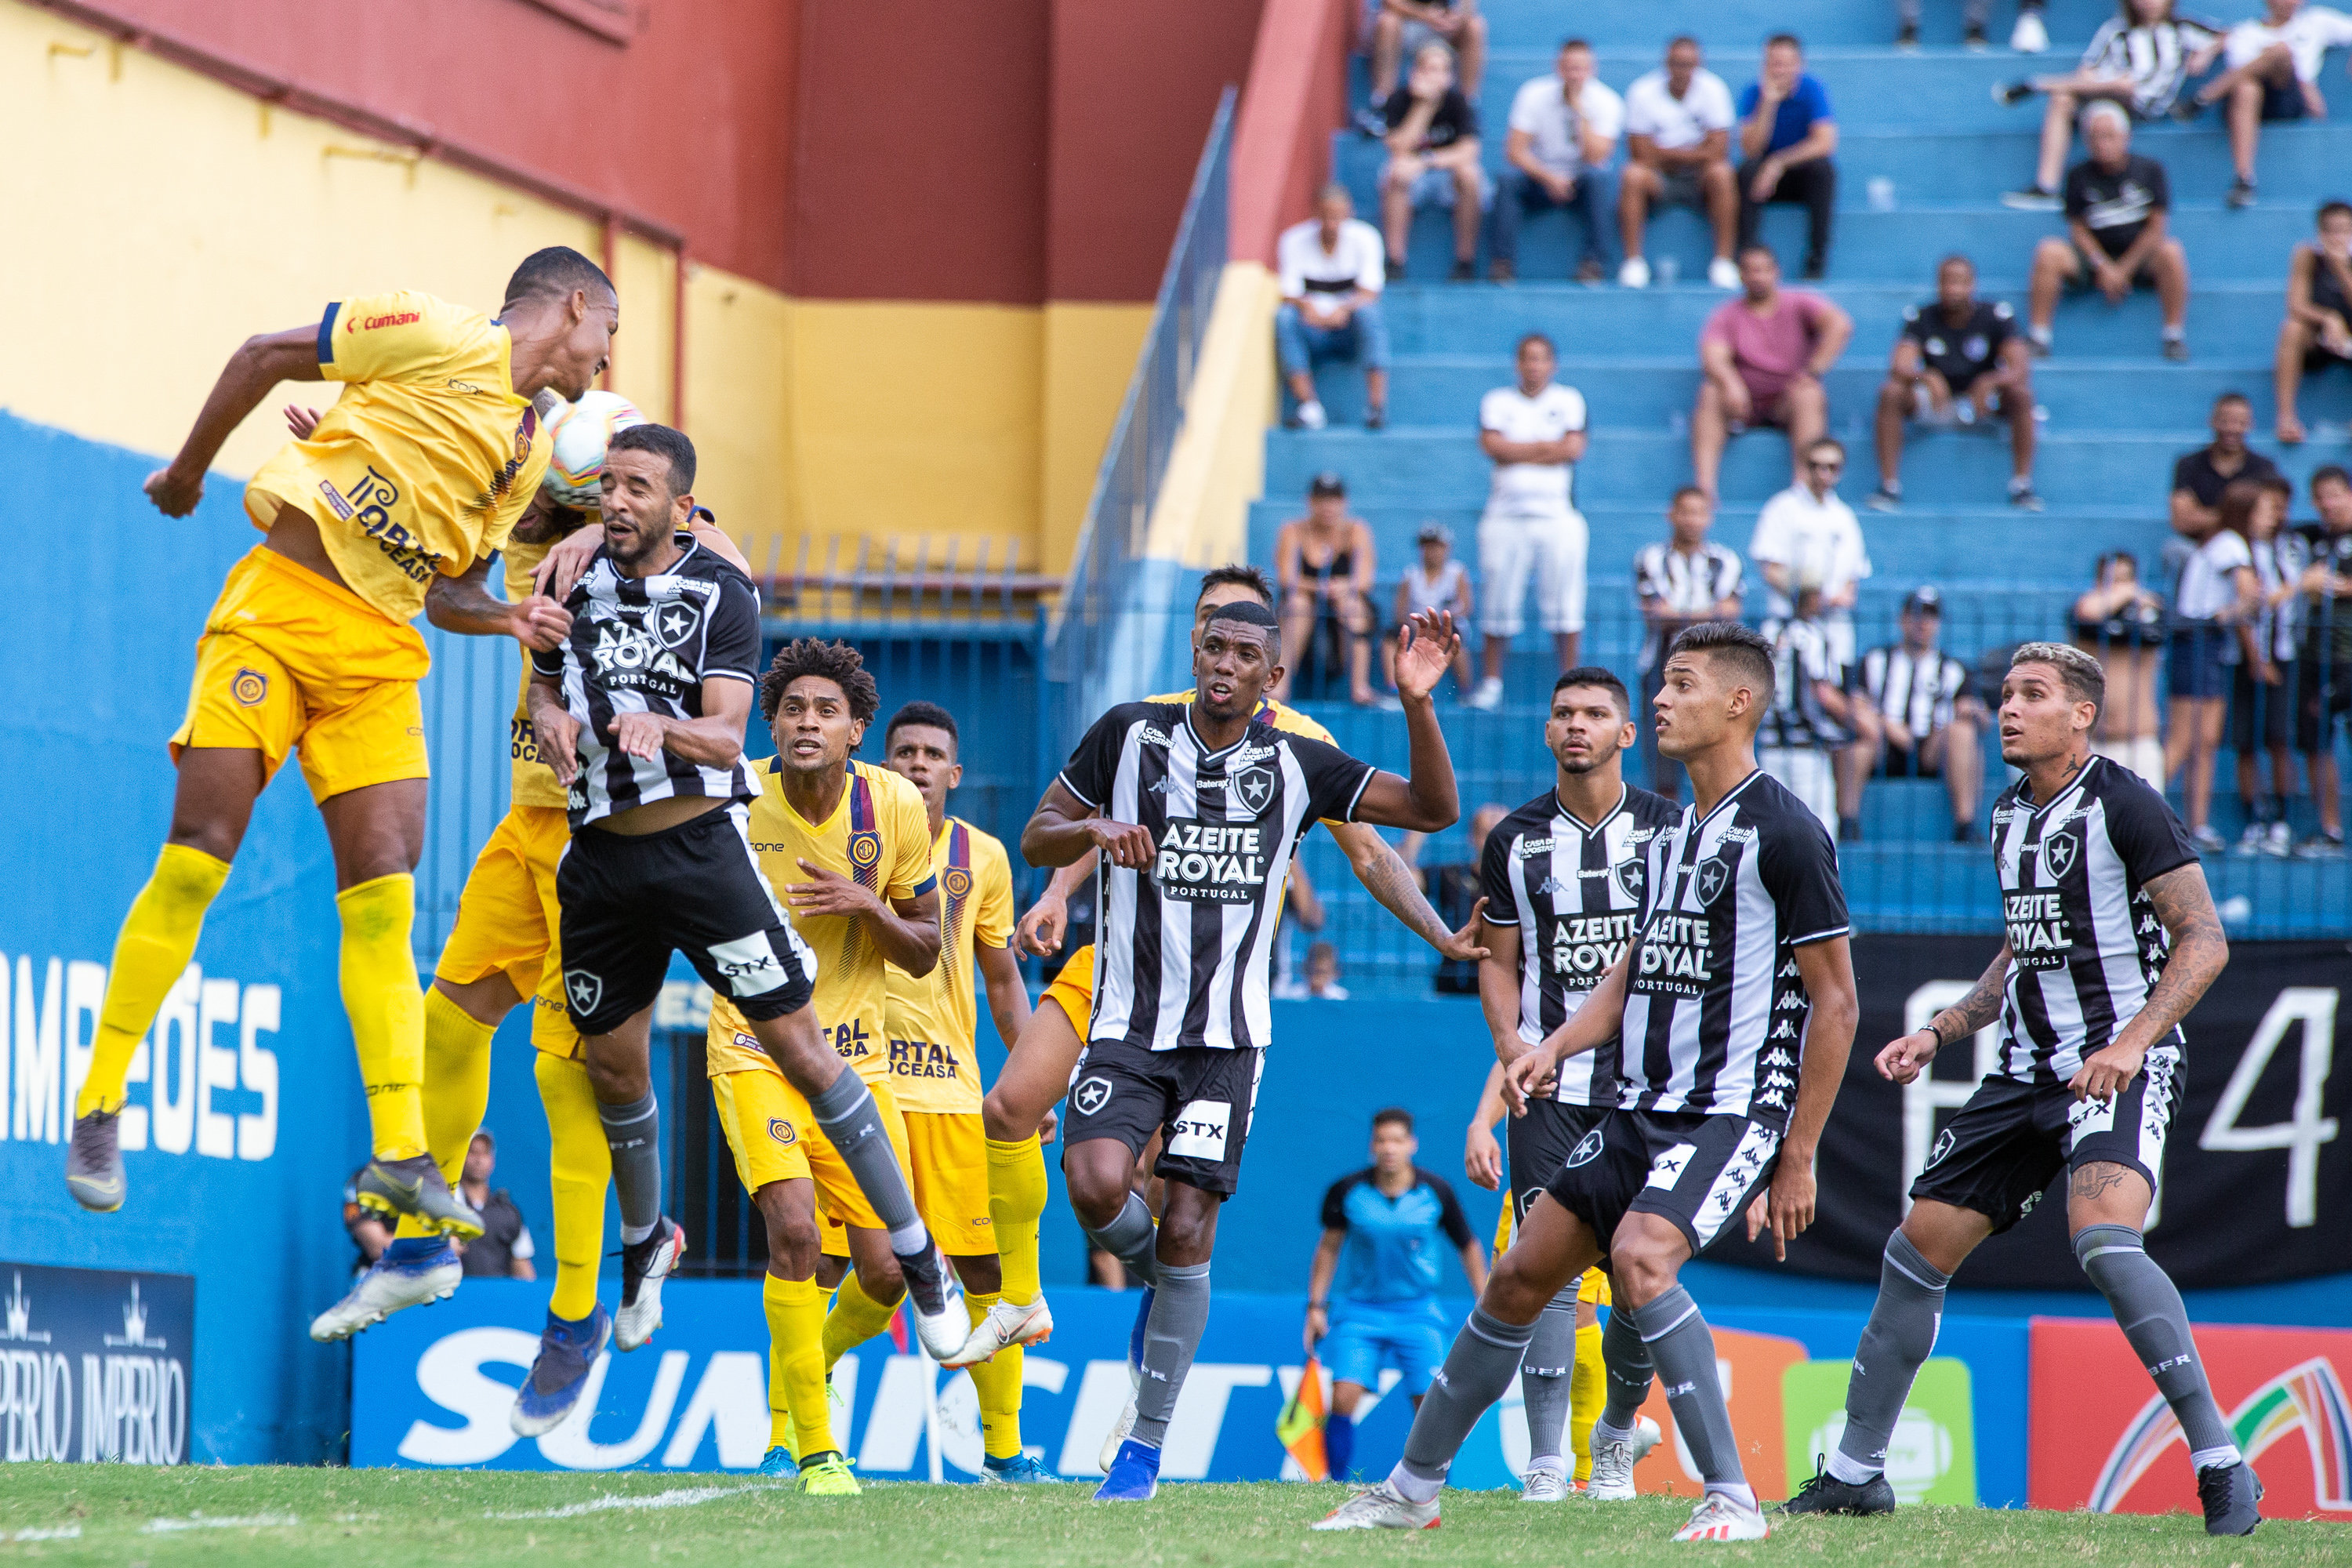 O Botafogo foi mais uma vez derrotado no Campeonato Carioca 2020. Pela segunda rodada da Taça Guanabara, a equipe perdeu para o Madureira por 2 a 0, no Estádio Conselheiro Galvão. Confira as notas do LANCE! (Por Gabriel Rodrigues - gabrielrodrigues@lancenet.com.br)